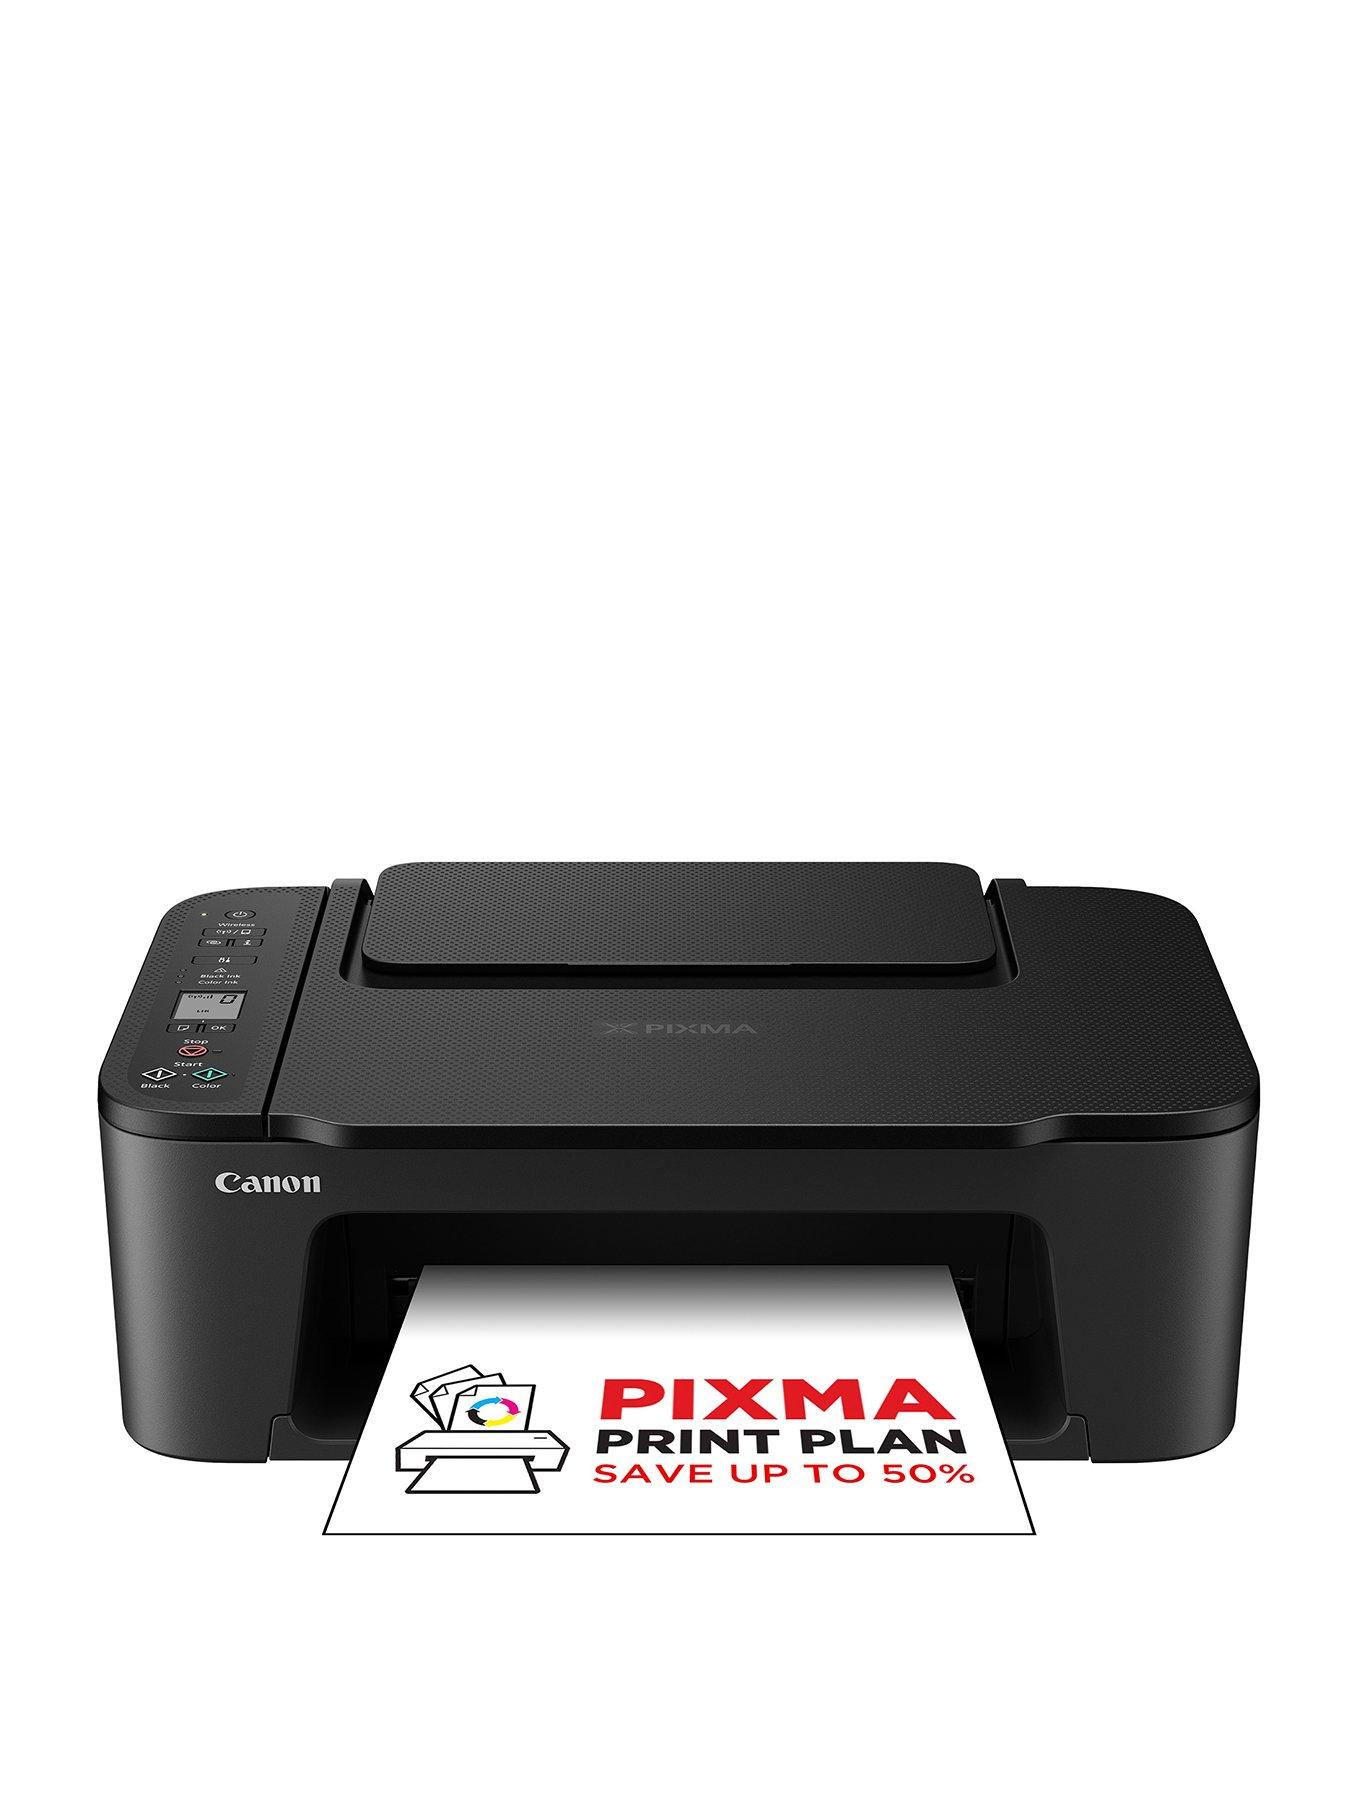 Canon PIXMA TS3550i All-in-One Wireless Wi-Fi Printer - Black